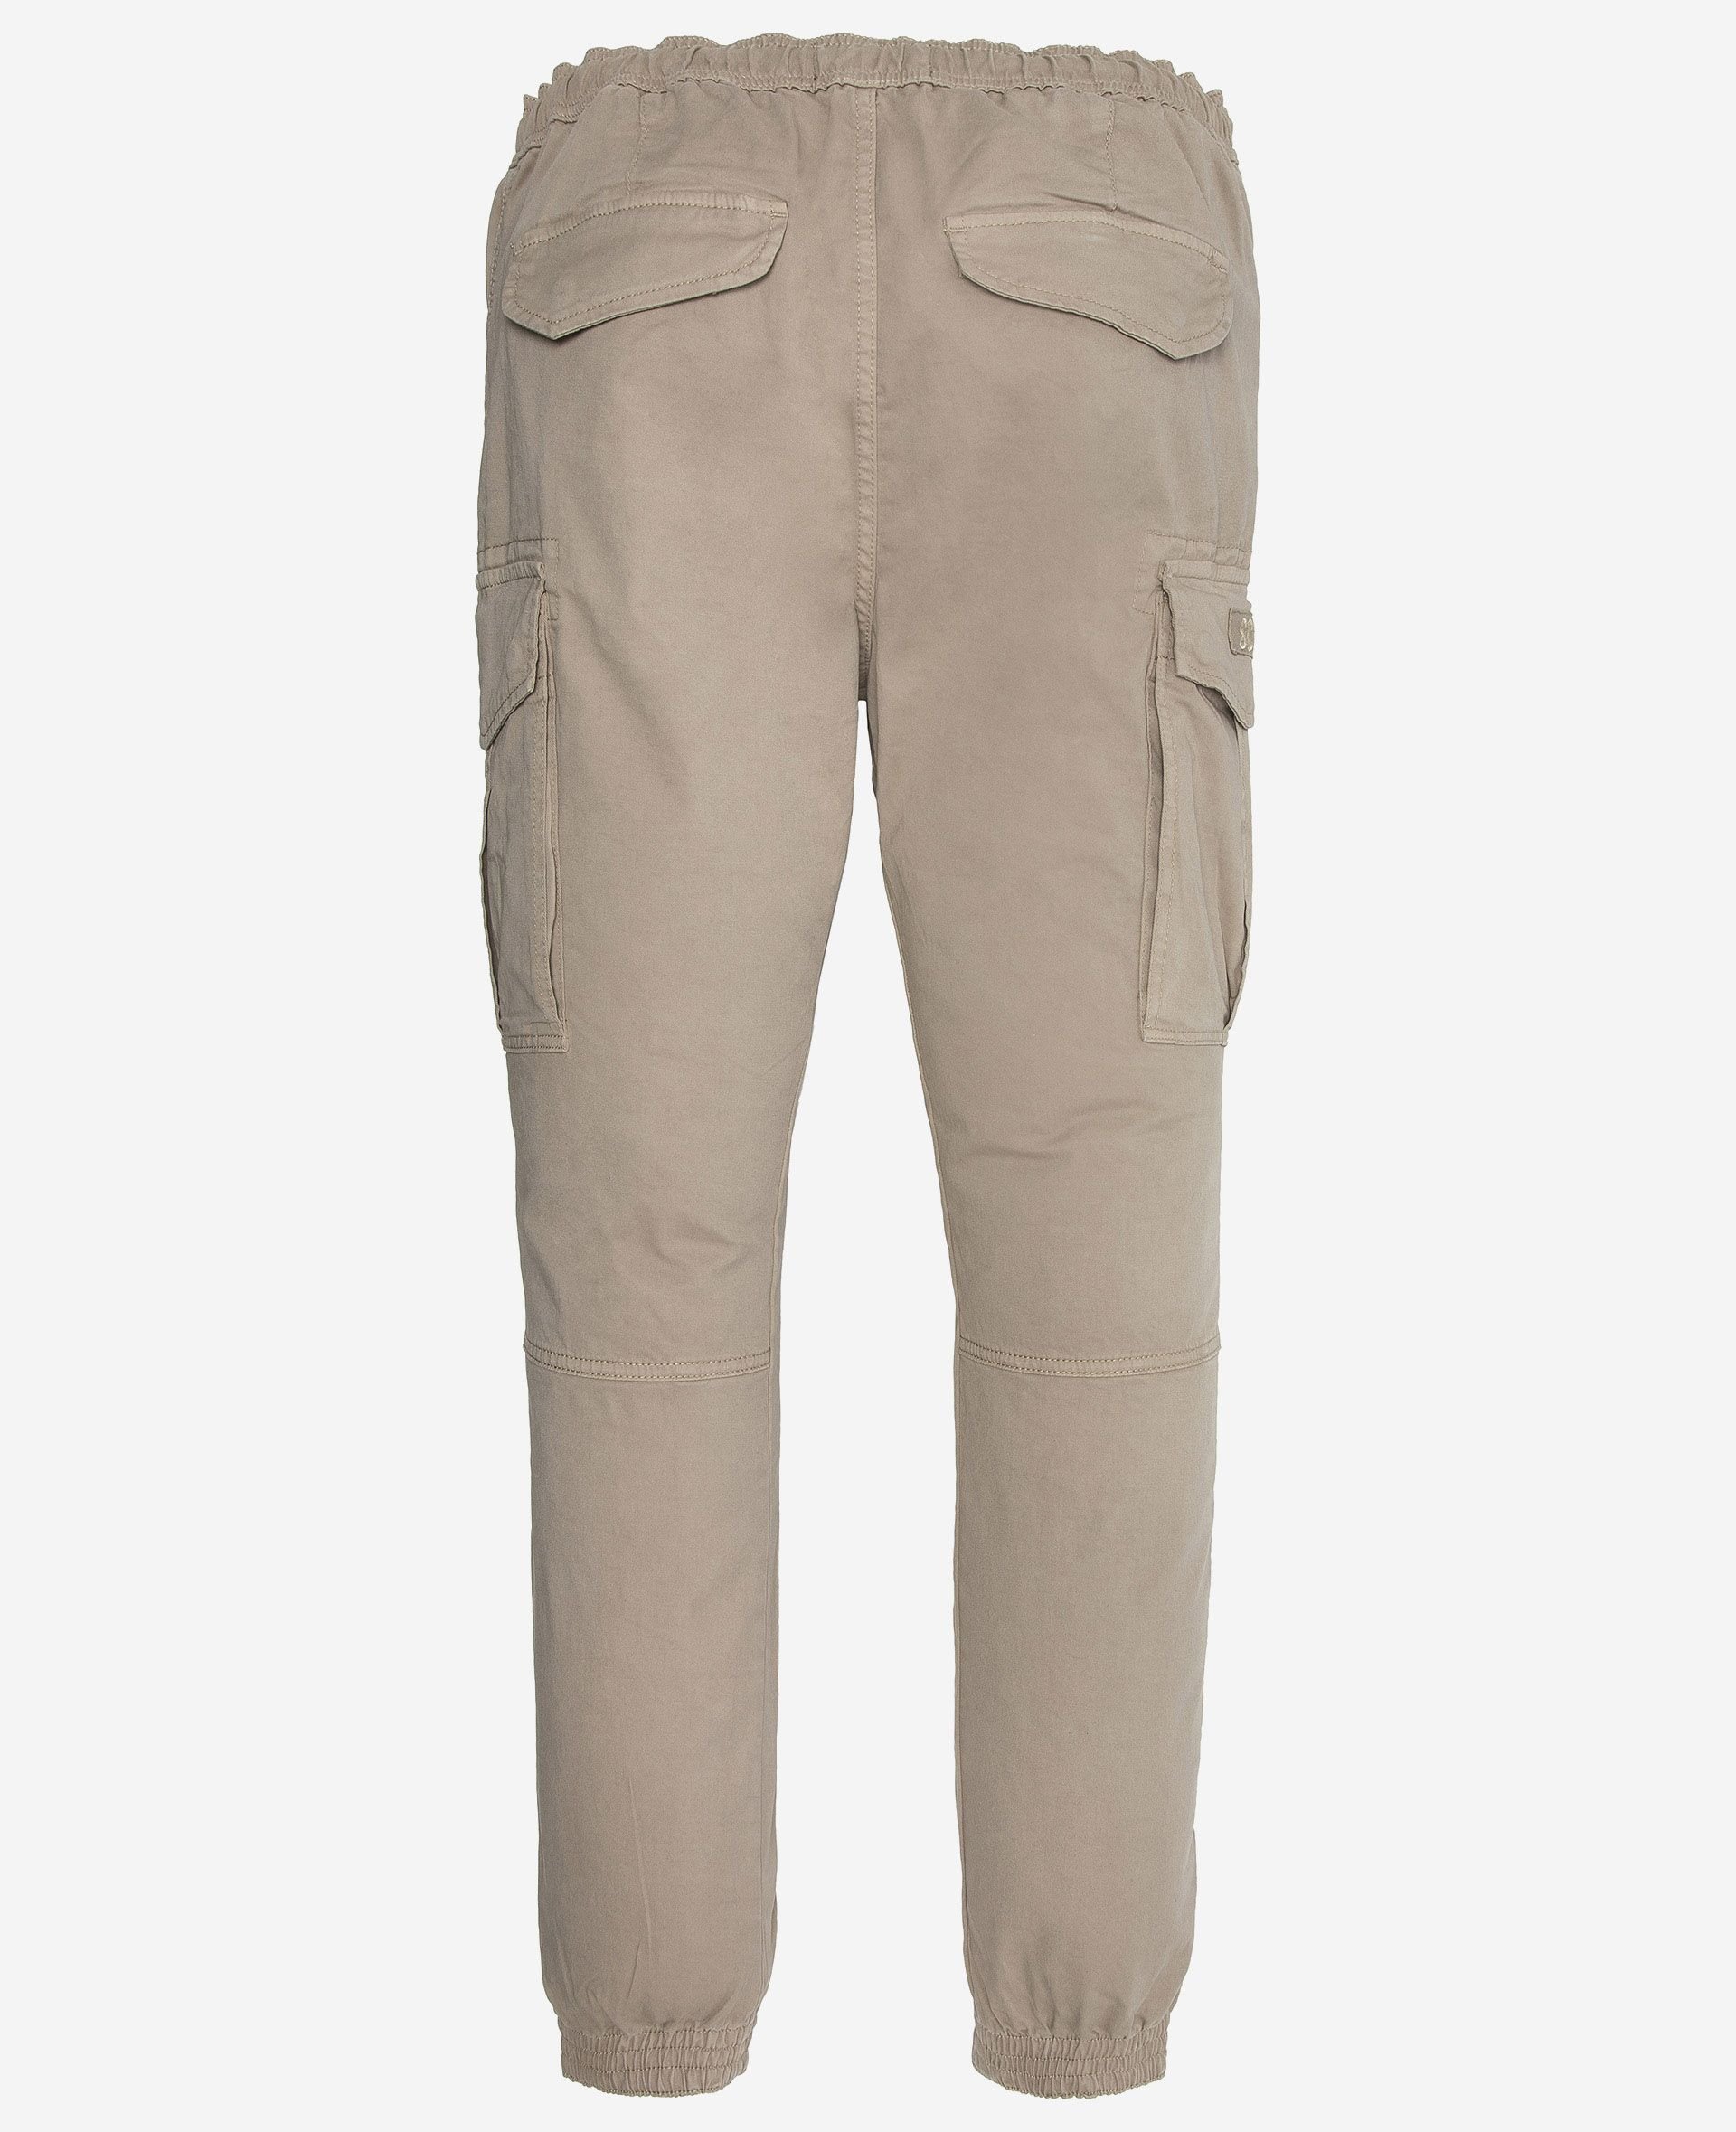 Pantalons sport/streetwear  Schott TRRELAX70 BEIGE